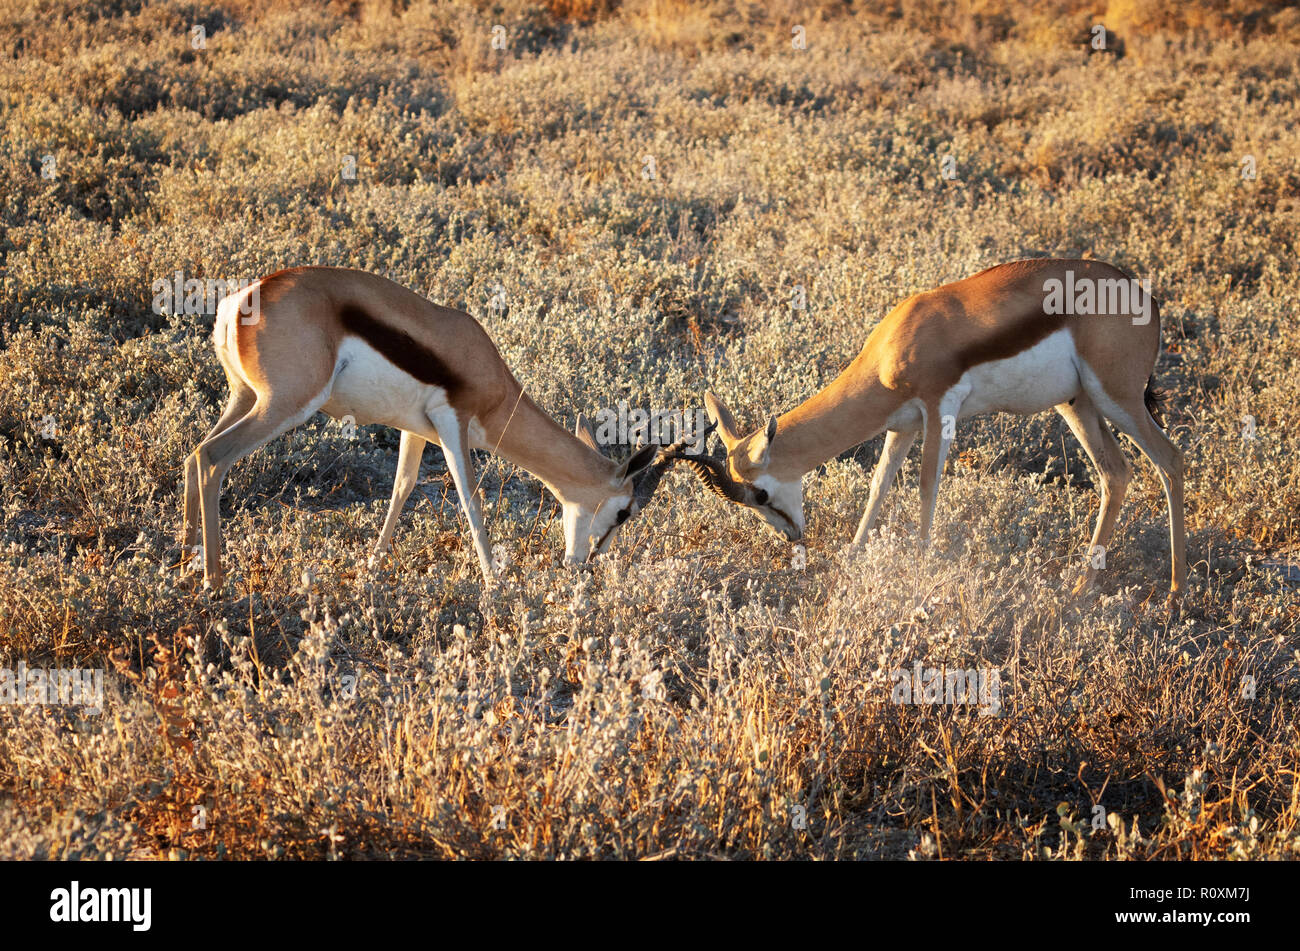 Springbok - deux springboks mâles adultes ( Antidorcas marsupialis ) enfermant des cornes et se battant au-dessus du territoire, Namibie Afrique. Animaux africains Banque D'Images